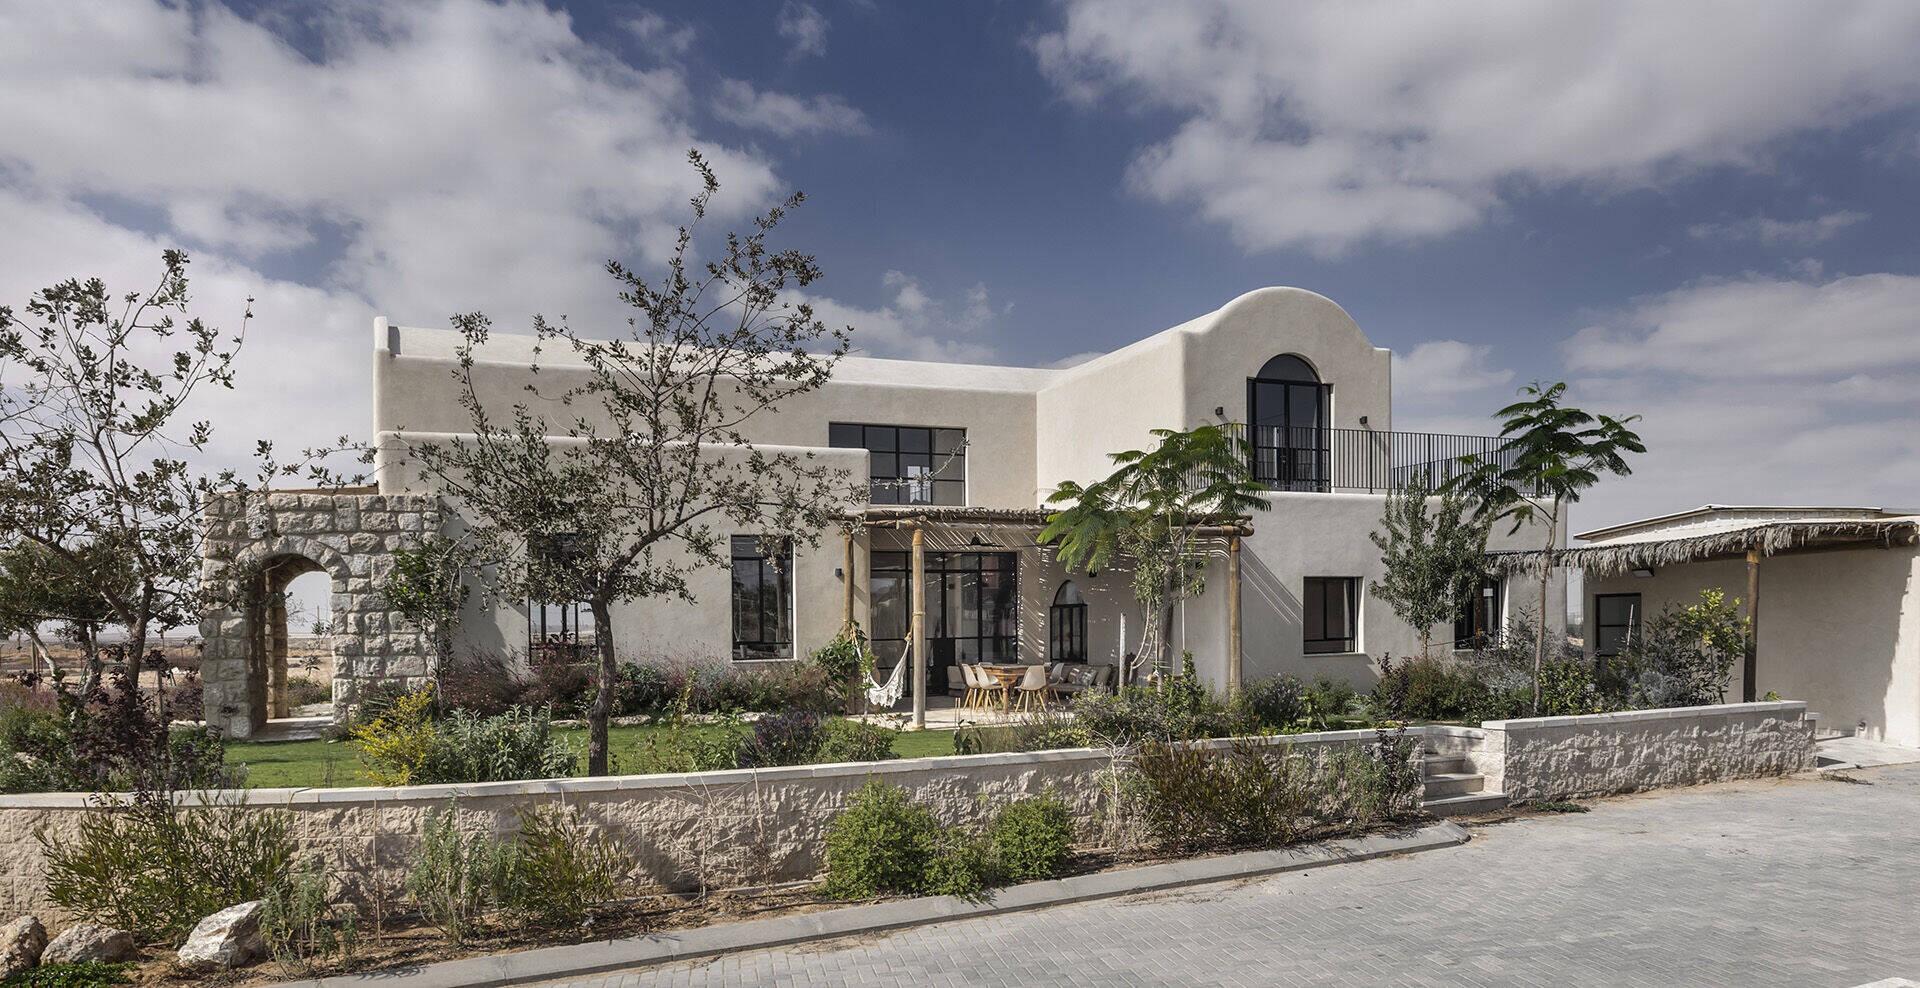 
Thiết kế của ngôi nhà được lấy cảm hứng từ phong cách Địa Trung Hải, sở hữu vẻ đẹp độc đáo nằm giữa sa mạc đầy nắng và gió
